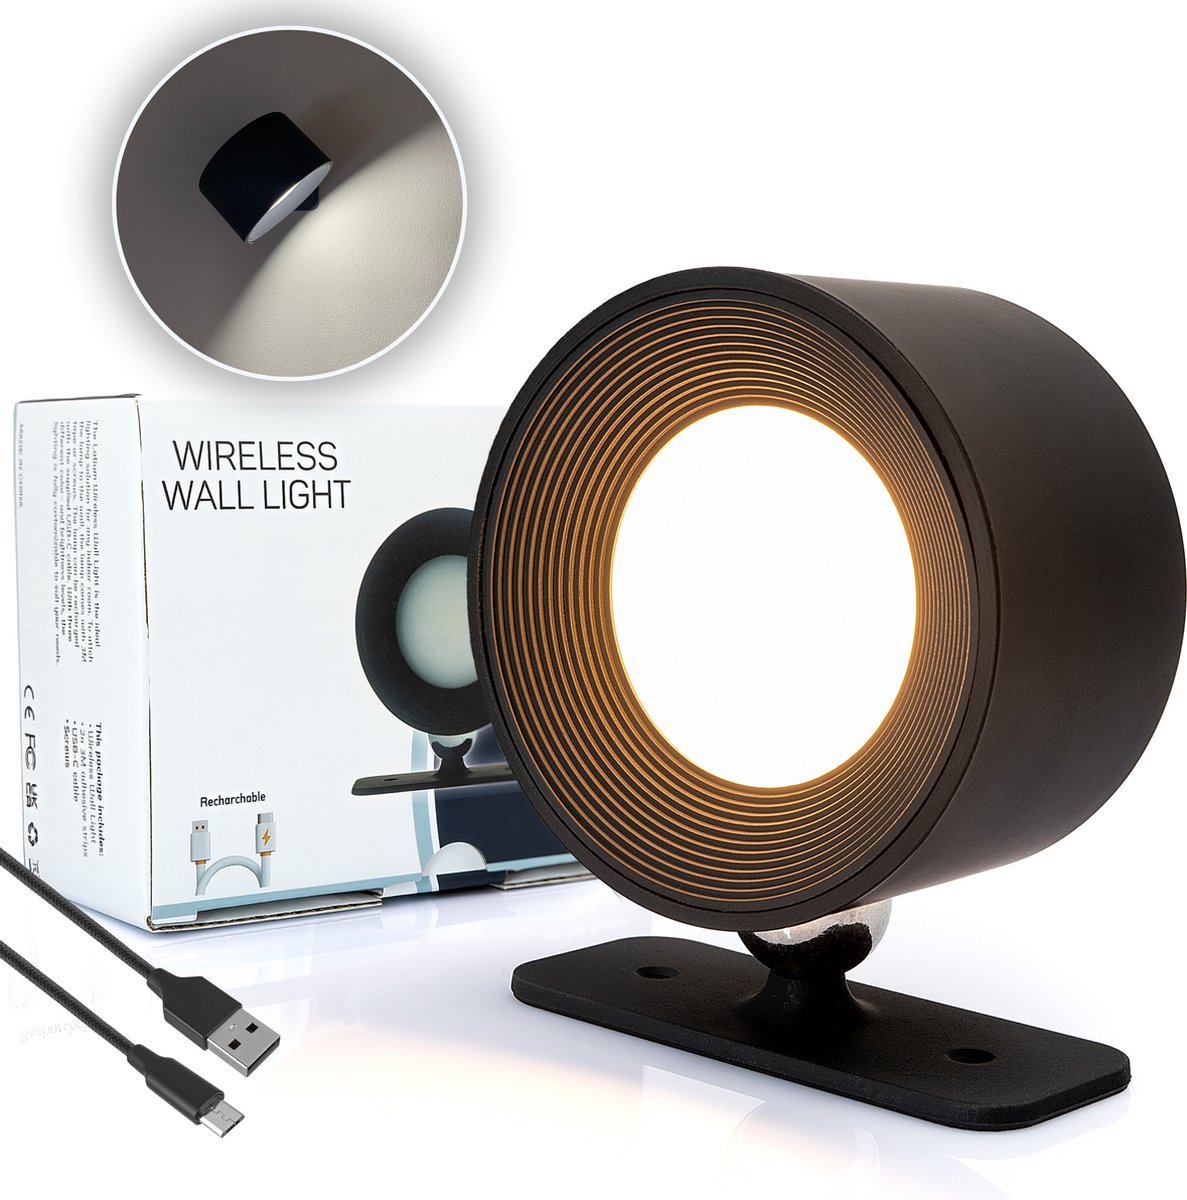 Latium Oplaadbare LED Wandlamp voor Binnen - USB Oplaadbaar - Draadloos - Batterij - Dimbaar - Nachtlampje - Slaapkamer - Woonkamer - Touch Control - 360º rotatie - Zwart - Latium